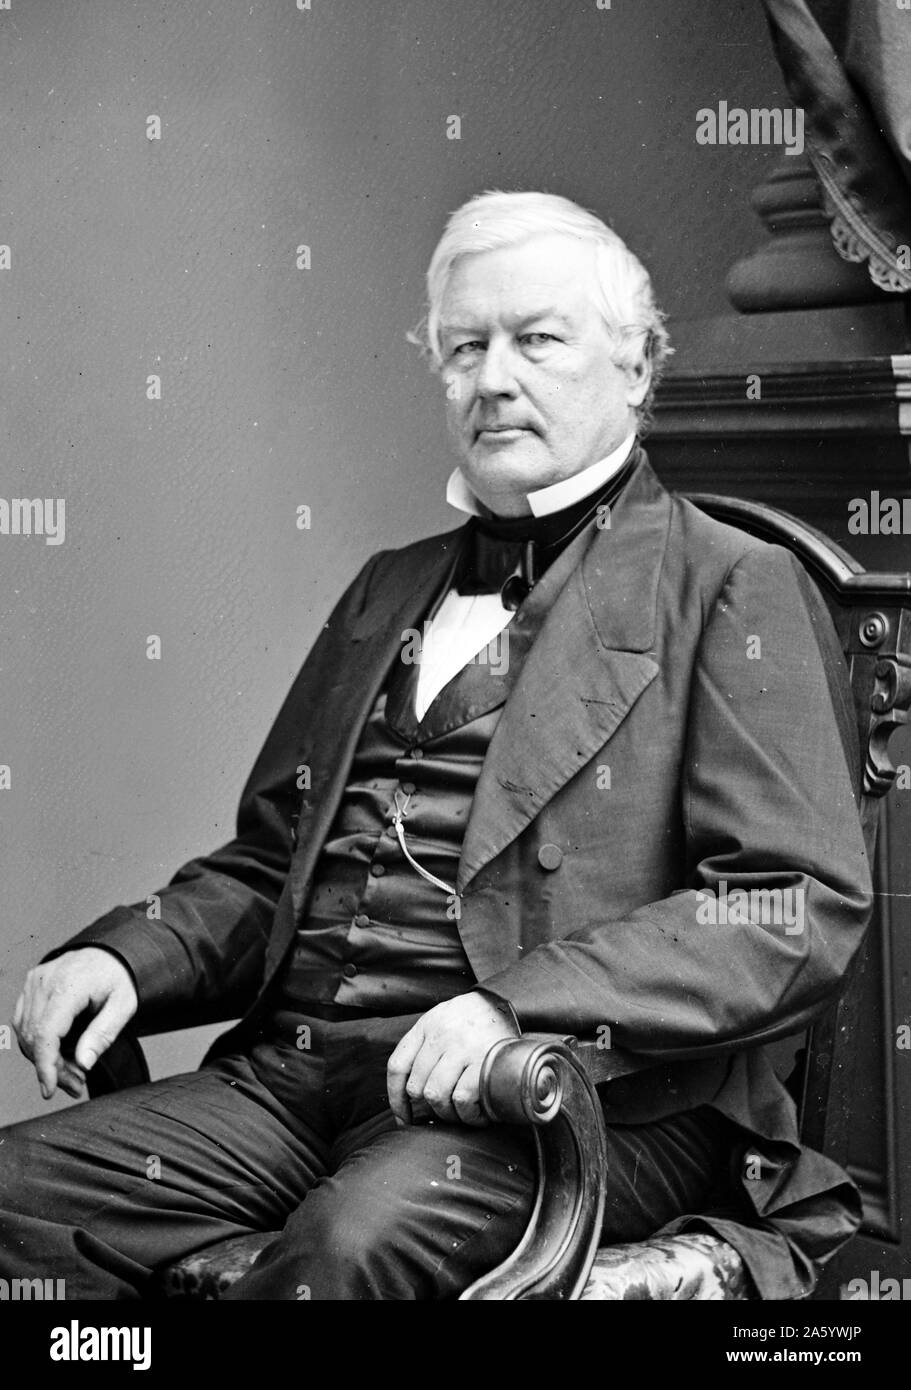 Le président Millard Fillmore 1860. Millard Fillmore (7 janvier 1800 - 8 mars 1874) était le 13e président des États-Unis (1850-1853), le dernier président du parti Whig, et le dernier président à ne pas être affiliés à l'une ou l'autre parties démocrate ou républicaine Banque D'Images